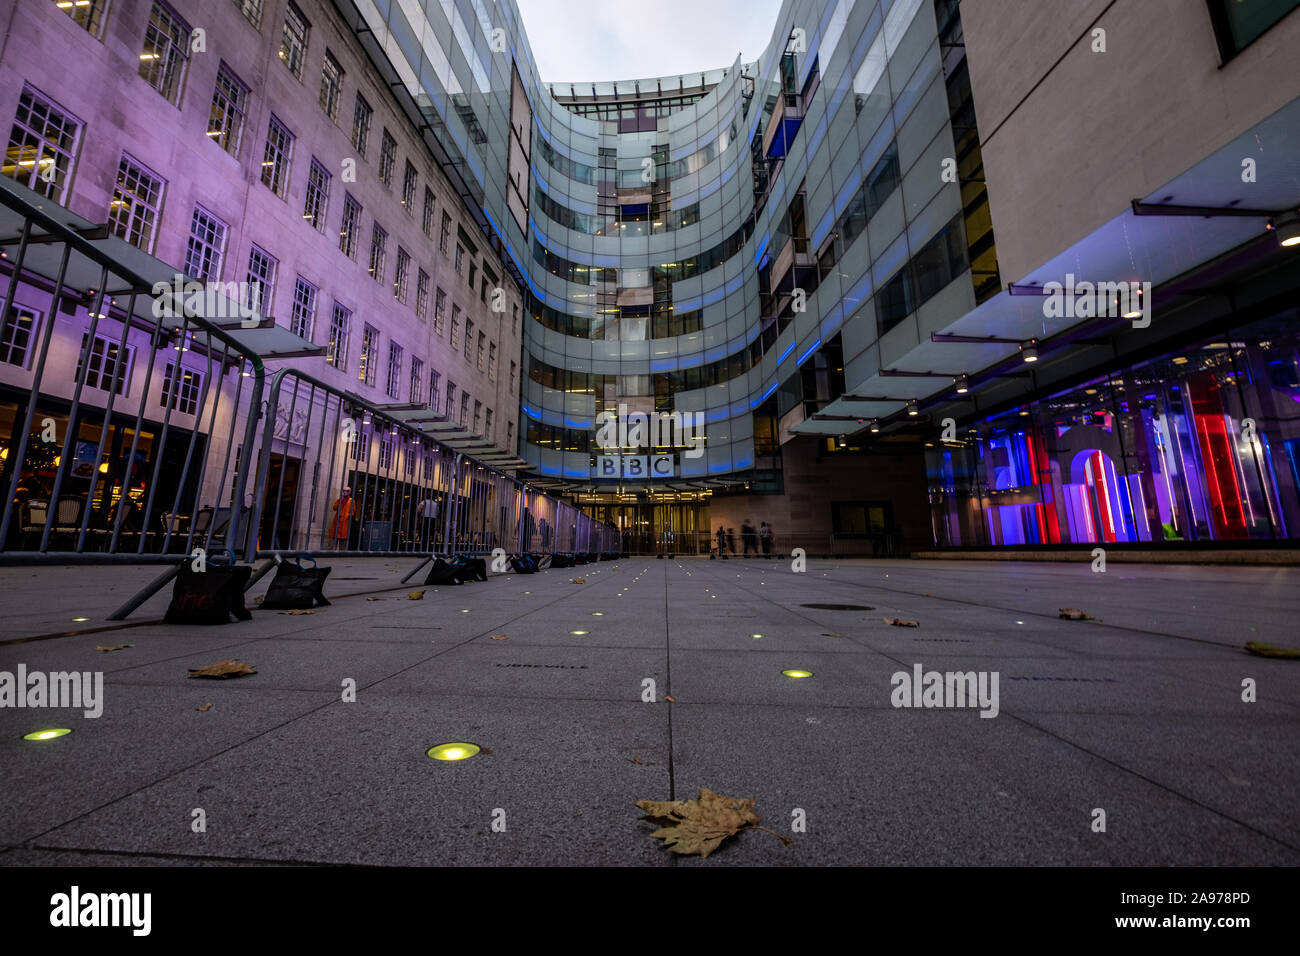 Oder die BBC British Broadcasting Corporation Hauptsitz in Portland Place - eine Welt berühmten britischen öffentlich-rechtlichen Senders Stockfoto